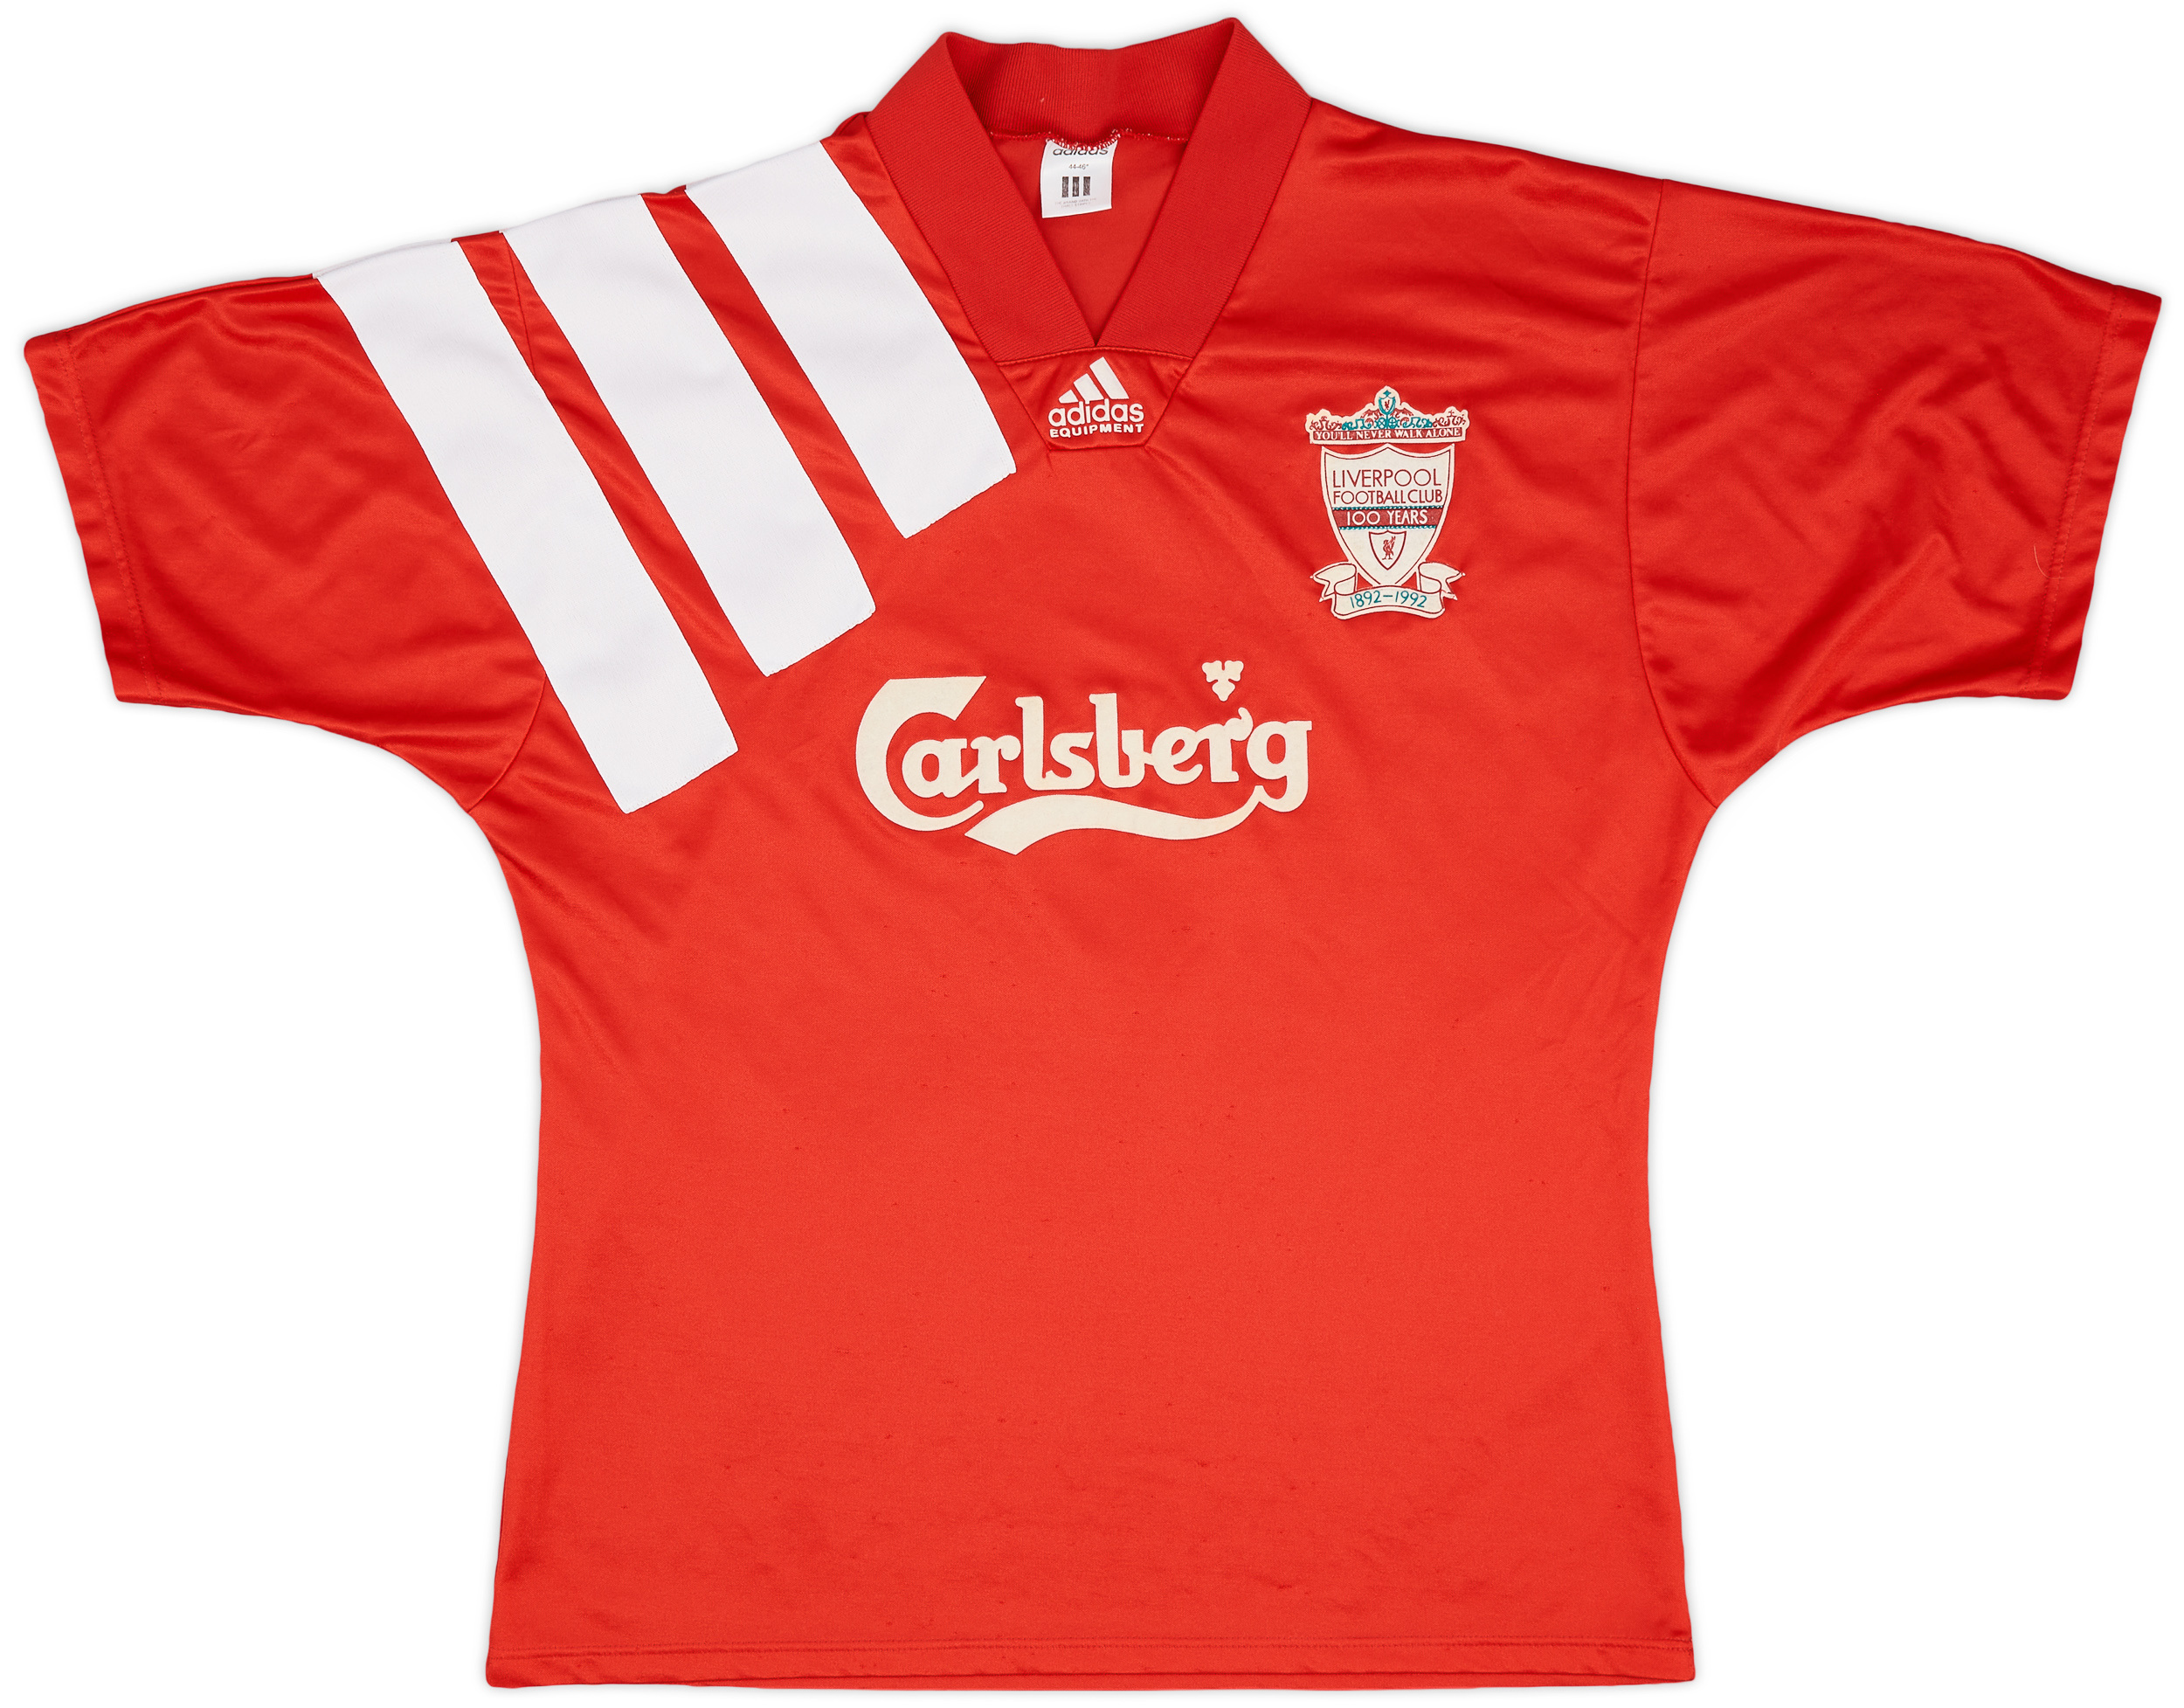 1992-93 Liverpool Centenary Home Shirt - 8/10 - ()